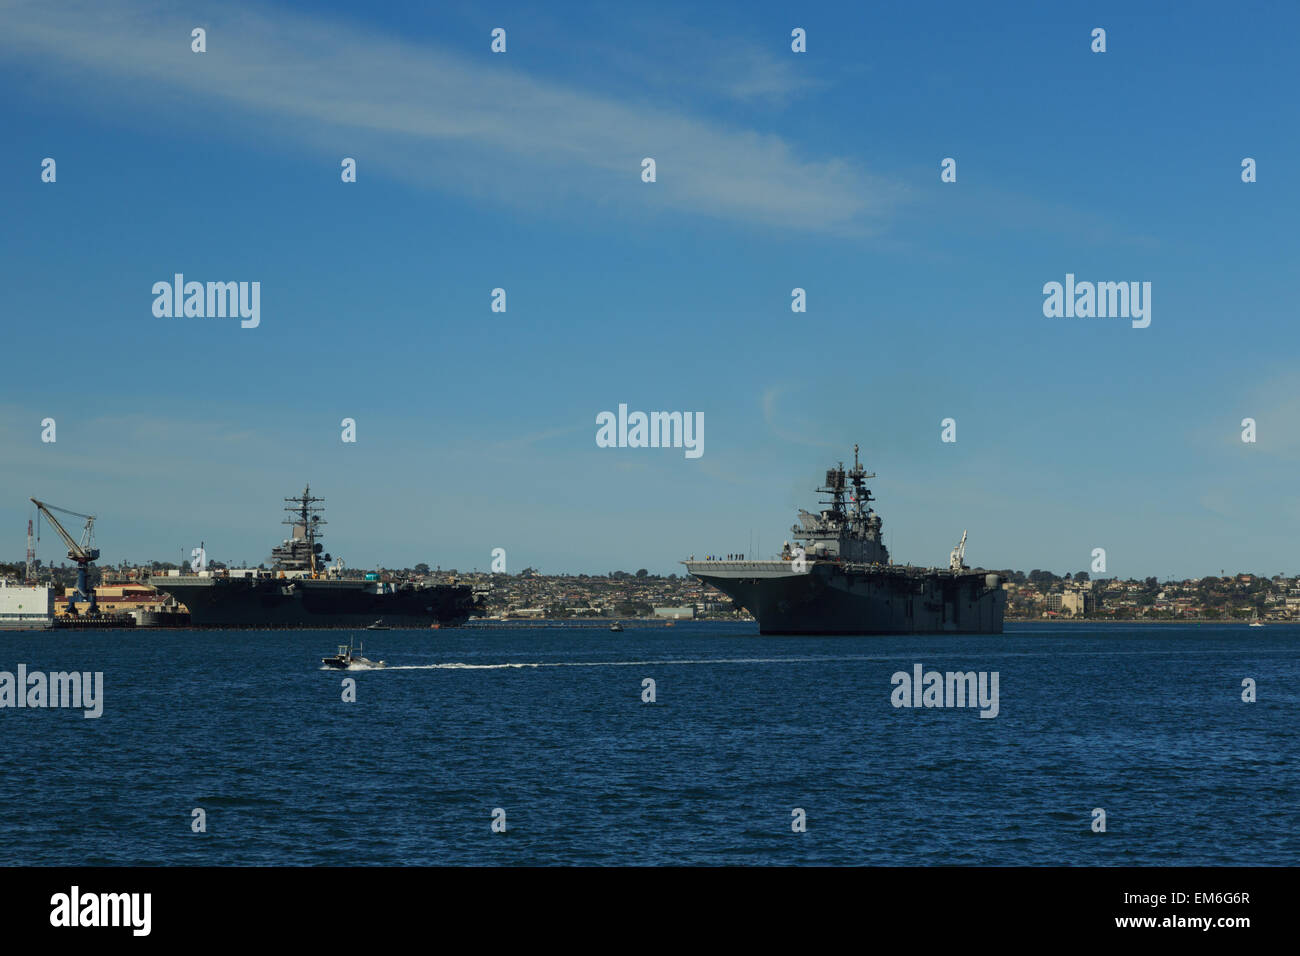 Una fotografia di alcune navi militari nella Baia di San Diego, come si vede dal Seaport Village. San Diego è una città in California. Foto Stock